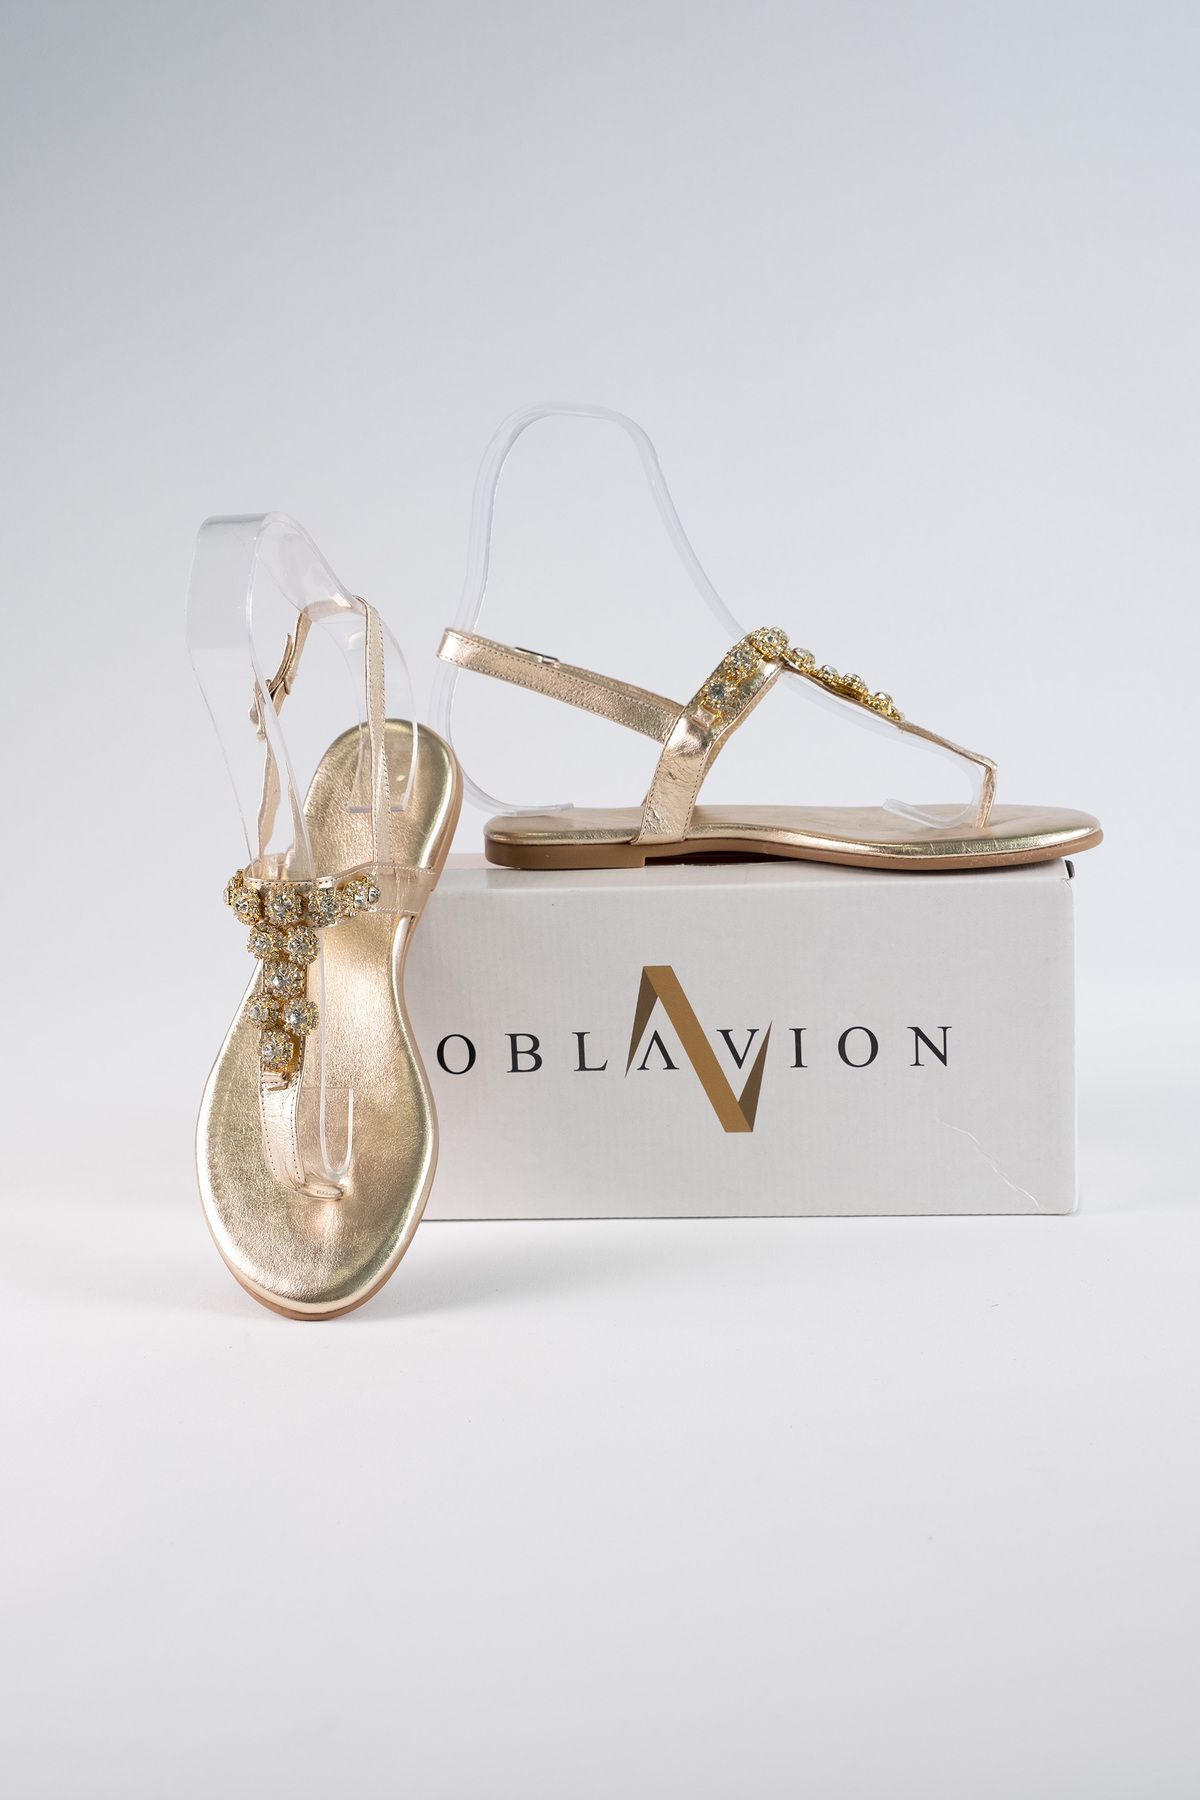 Oblavion Lavion Altın Cam Taşlı Günlük Kadın Sandalet